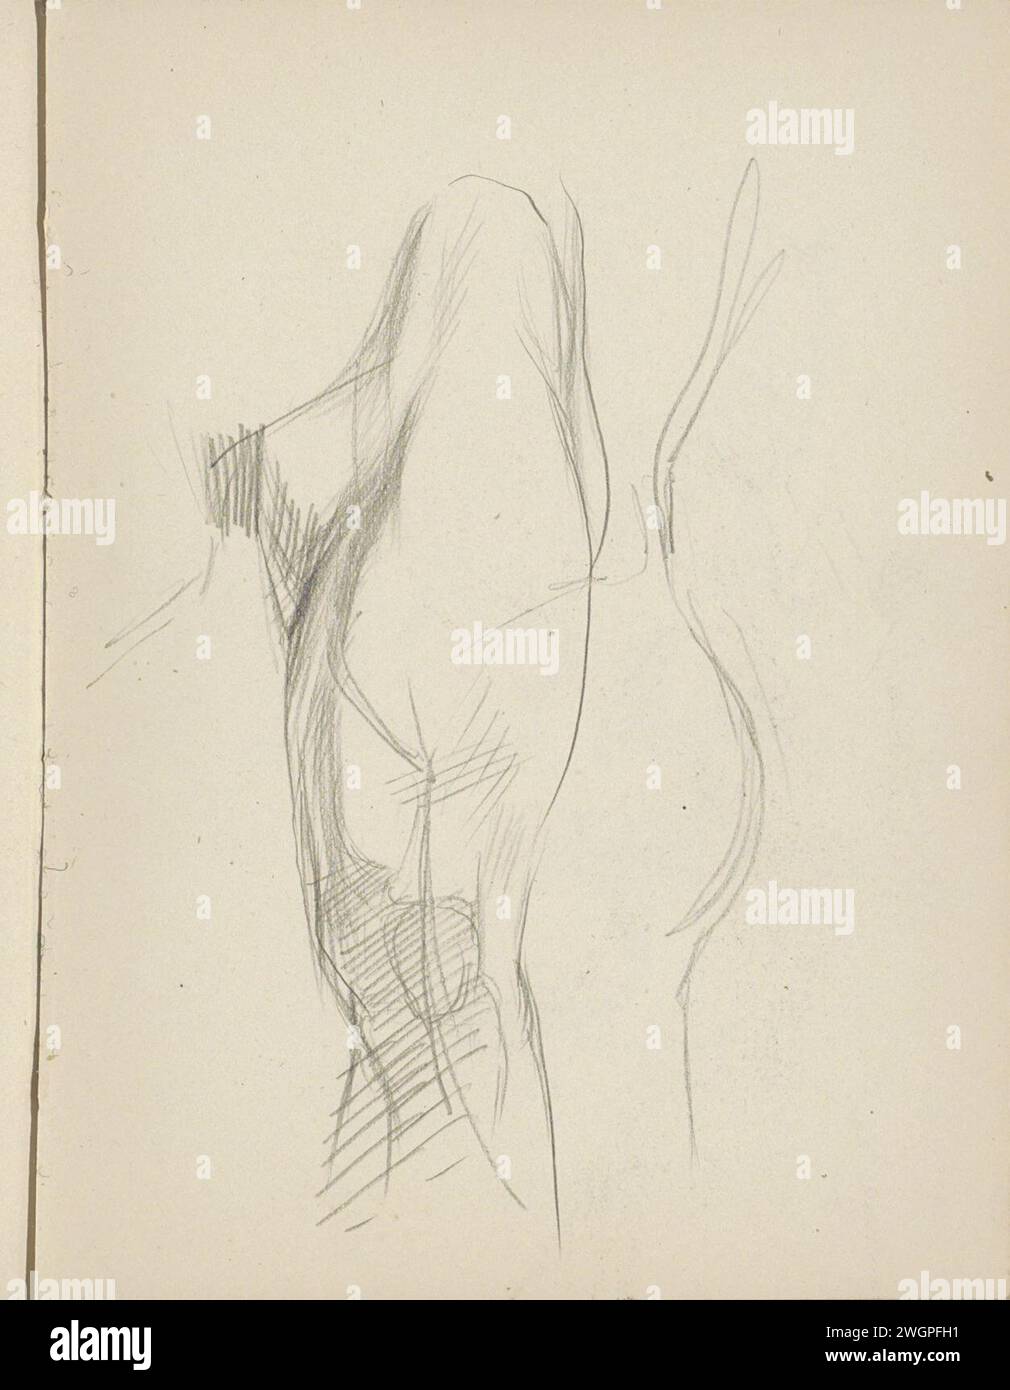 Oberschenkel und Rücken im Profil, 1906 - 1945 Seite 67 Recto aus einem Skizzenbuch mit 69 Blättern. Papier. Bleistift Oberschenkel. Zurück Stockfoto